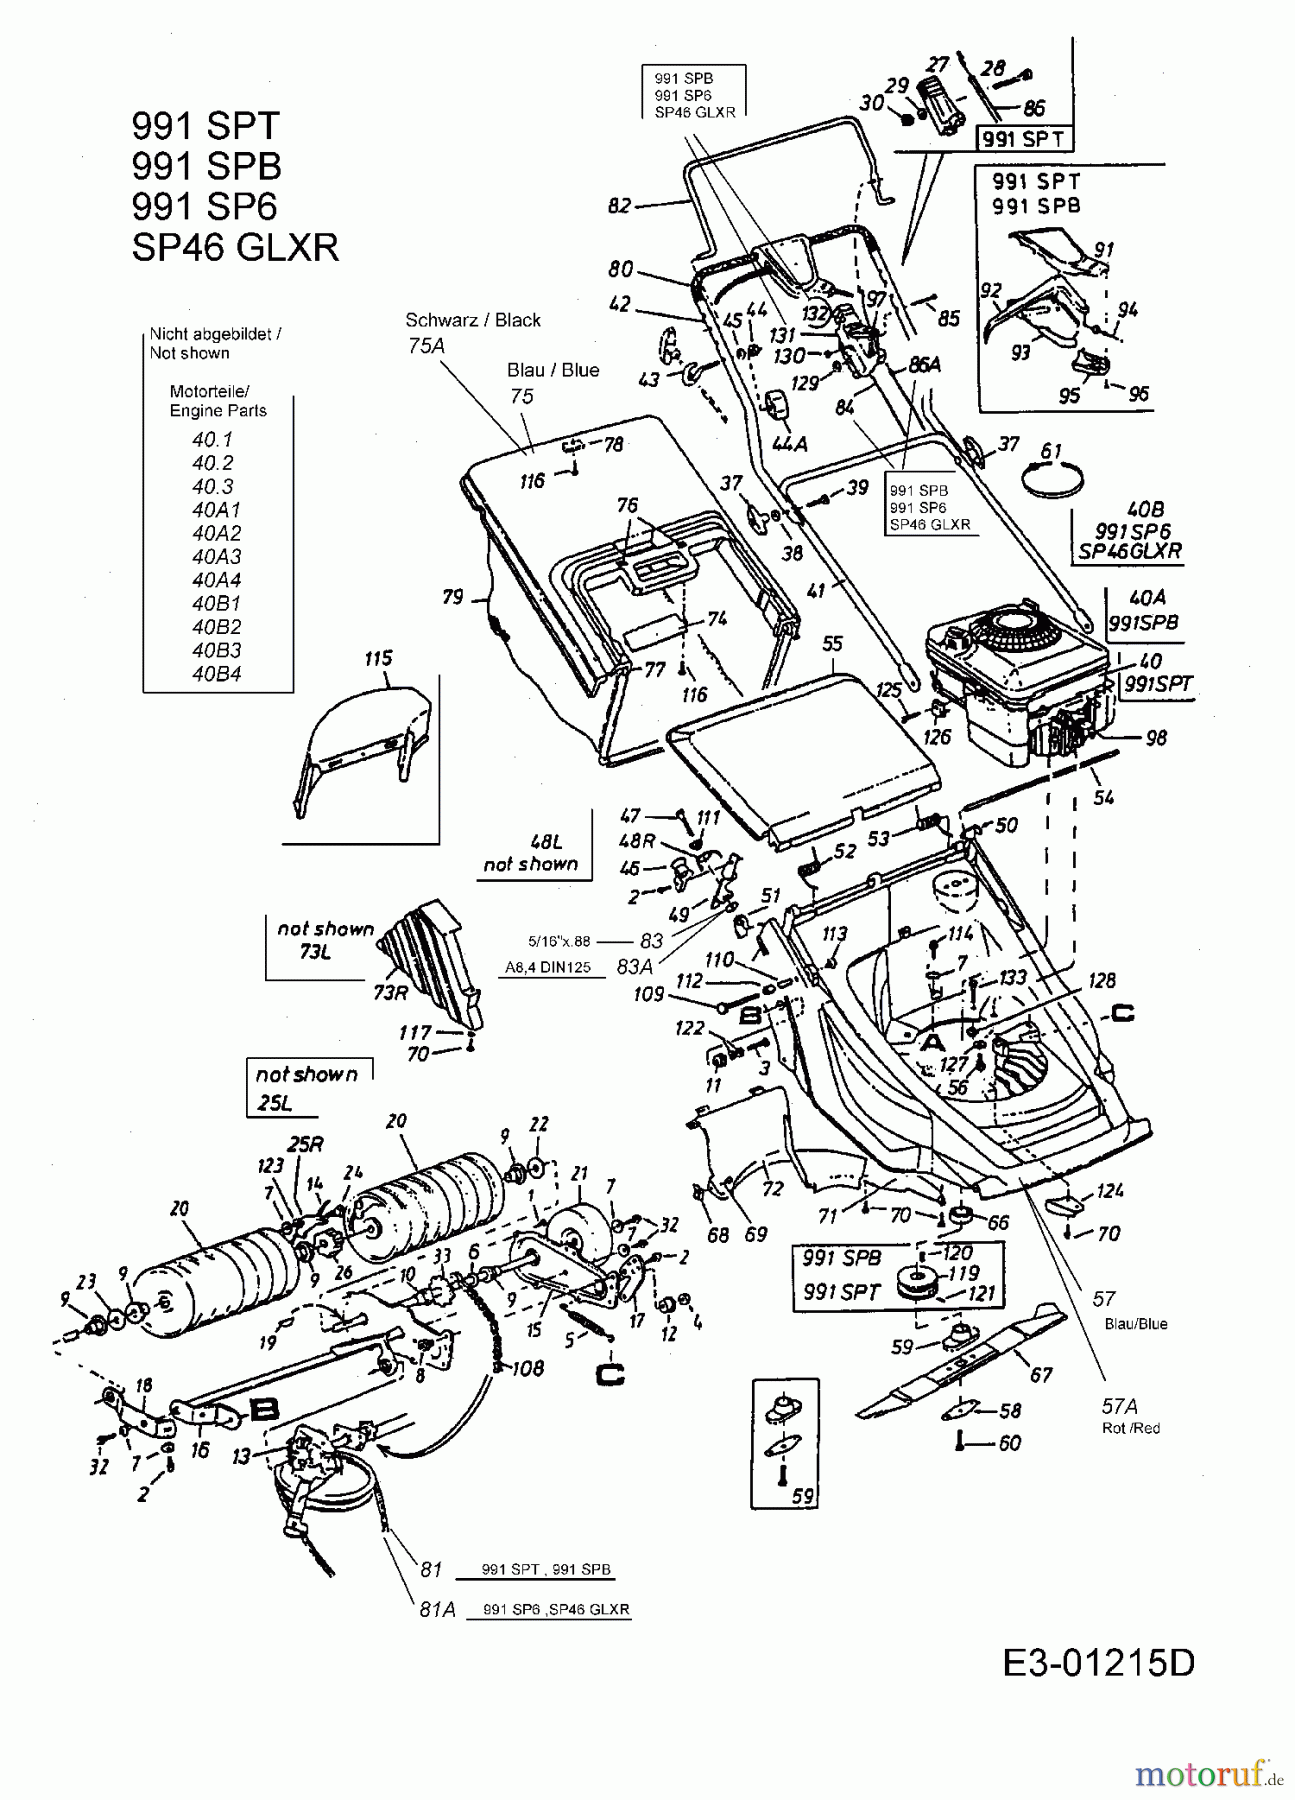  MTD Motormäher mit Antrieb SP 46 GLXR 12B-658C678  (2001) Grundgerät